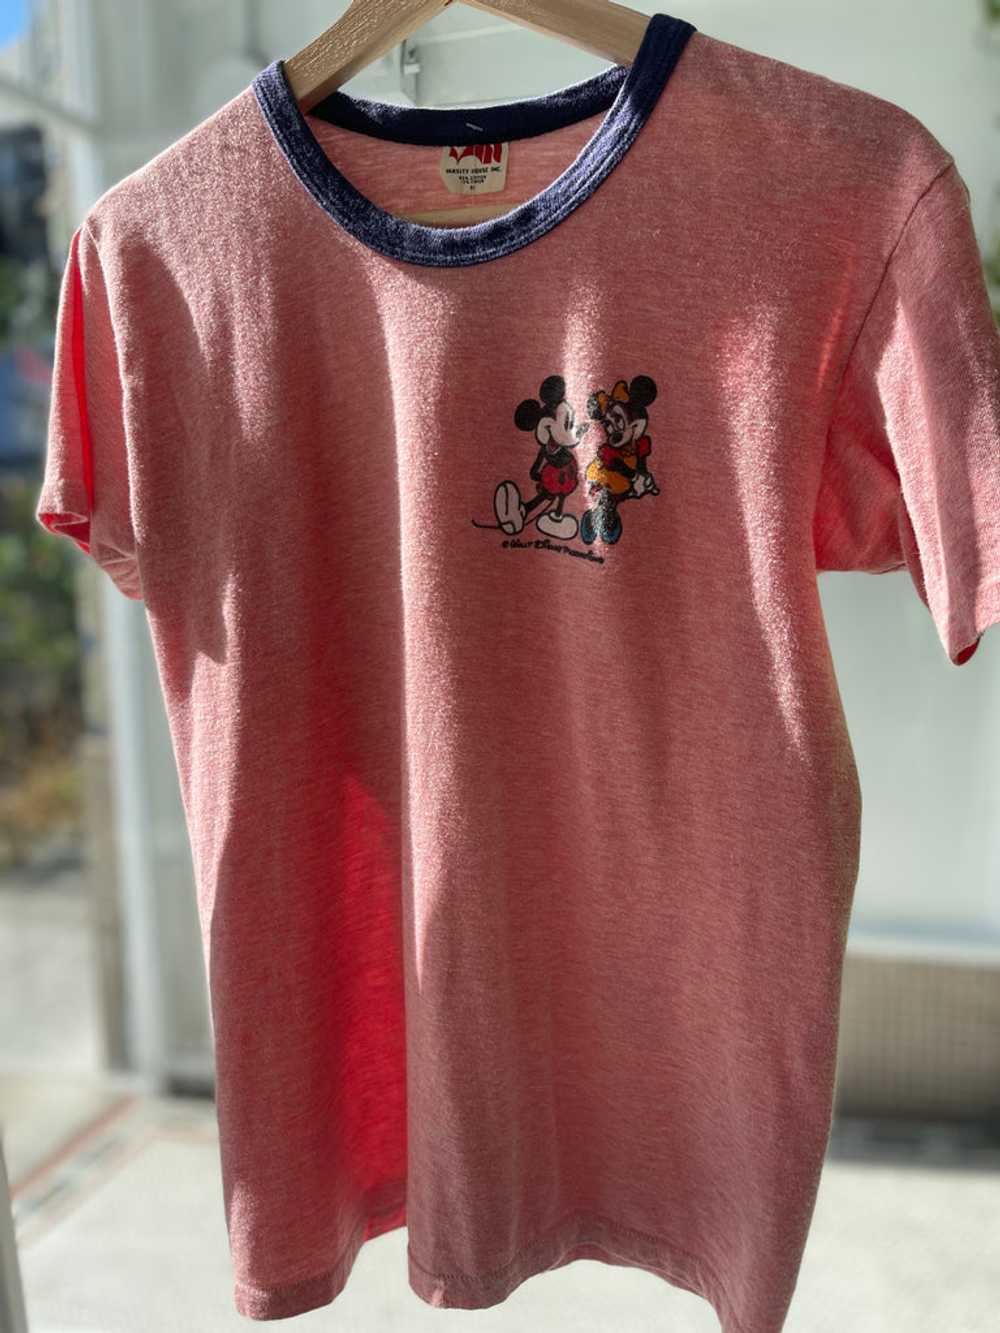 Vintage Disney ringer t shirt - image 2